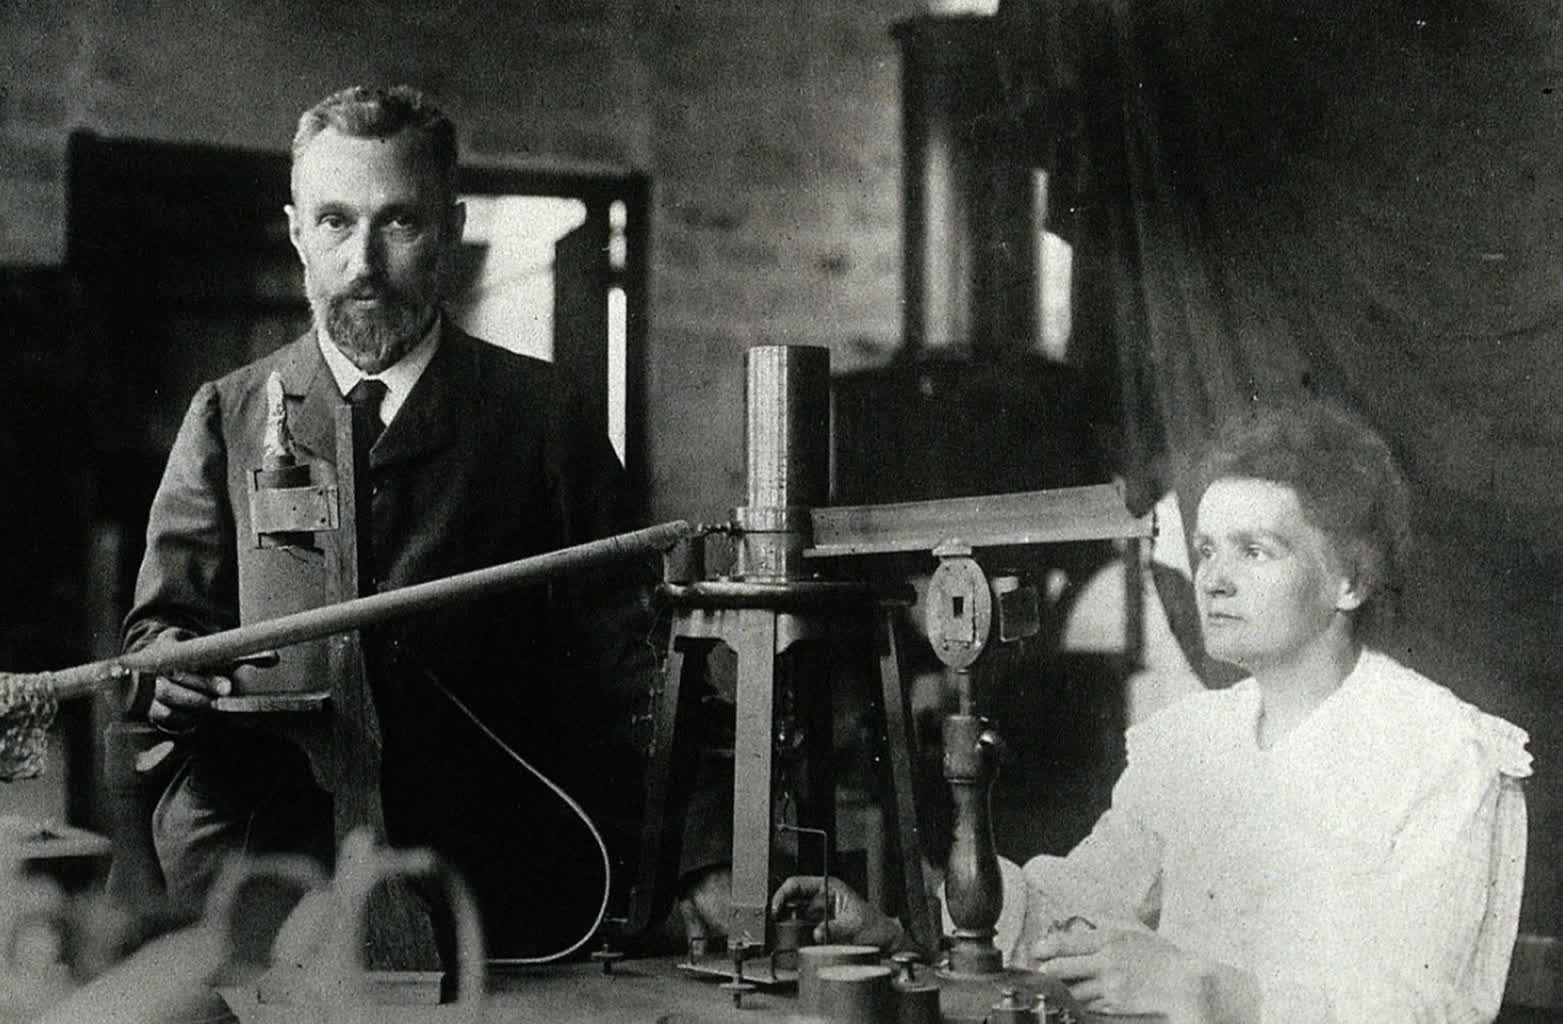 “Aprender fue una aventura para ella”.  Maria Skłodowska-Curie en memoria de sus seres queridos